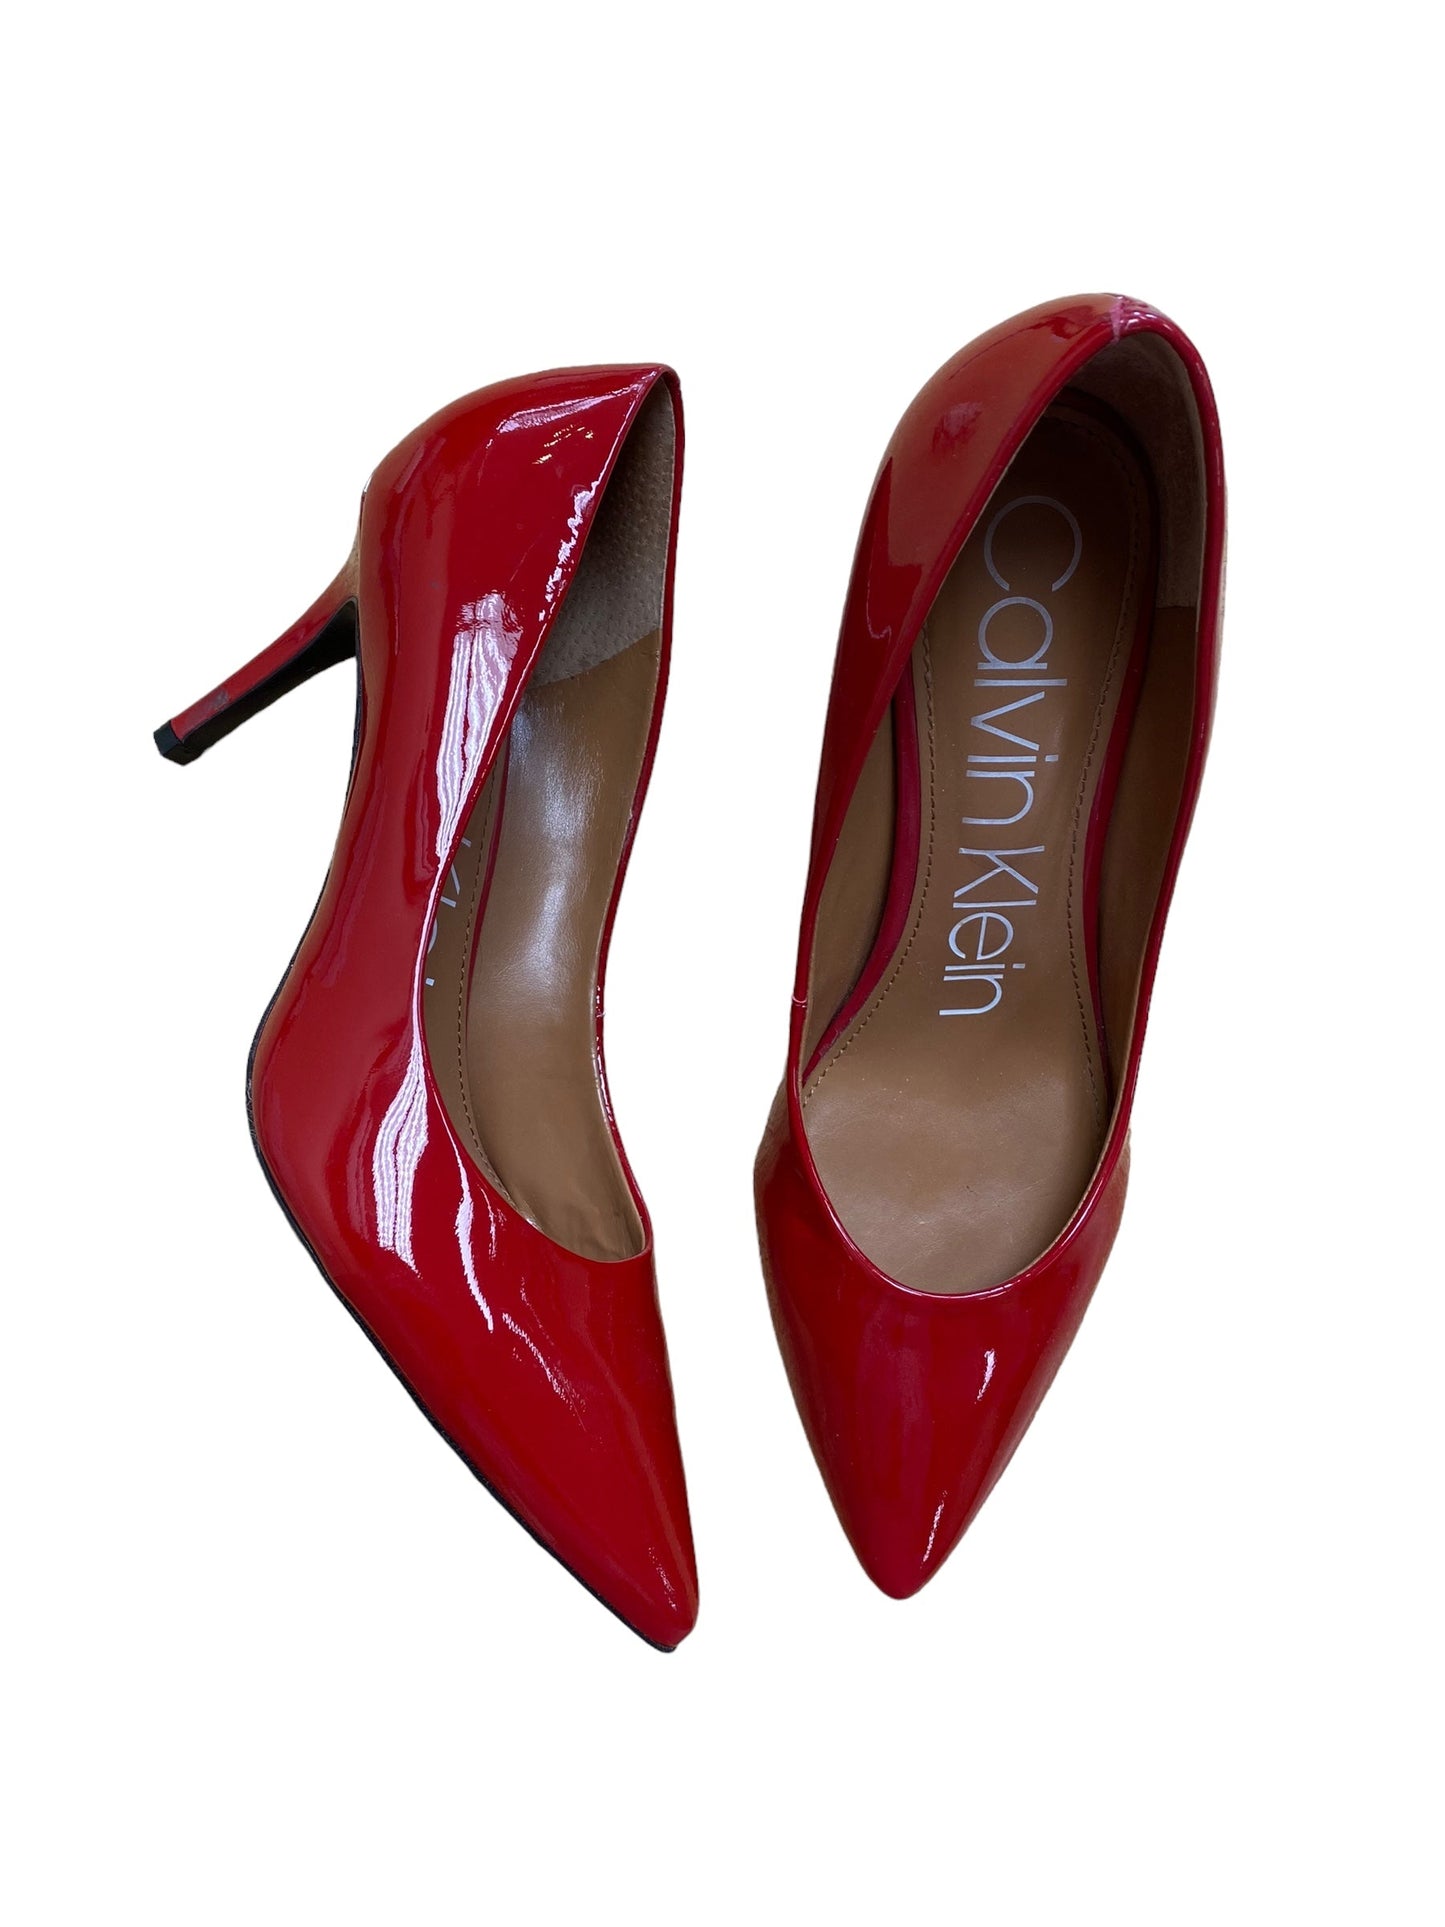 Red Shoes Heels Stiletto Calvin Klein, Size 9